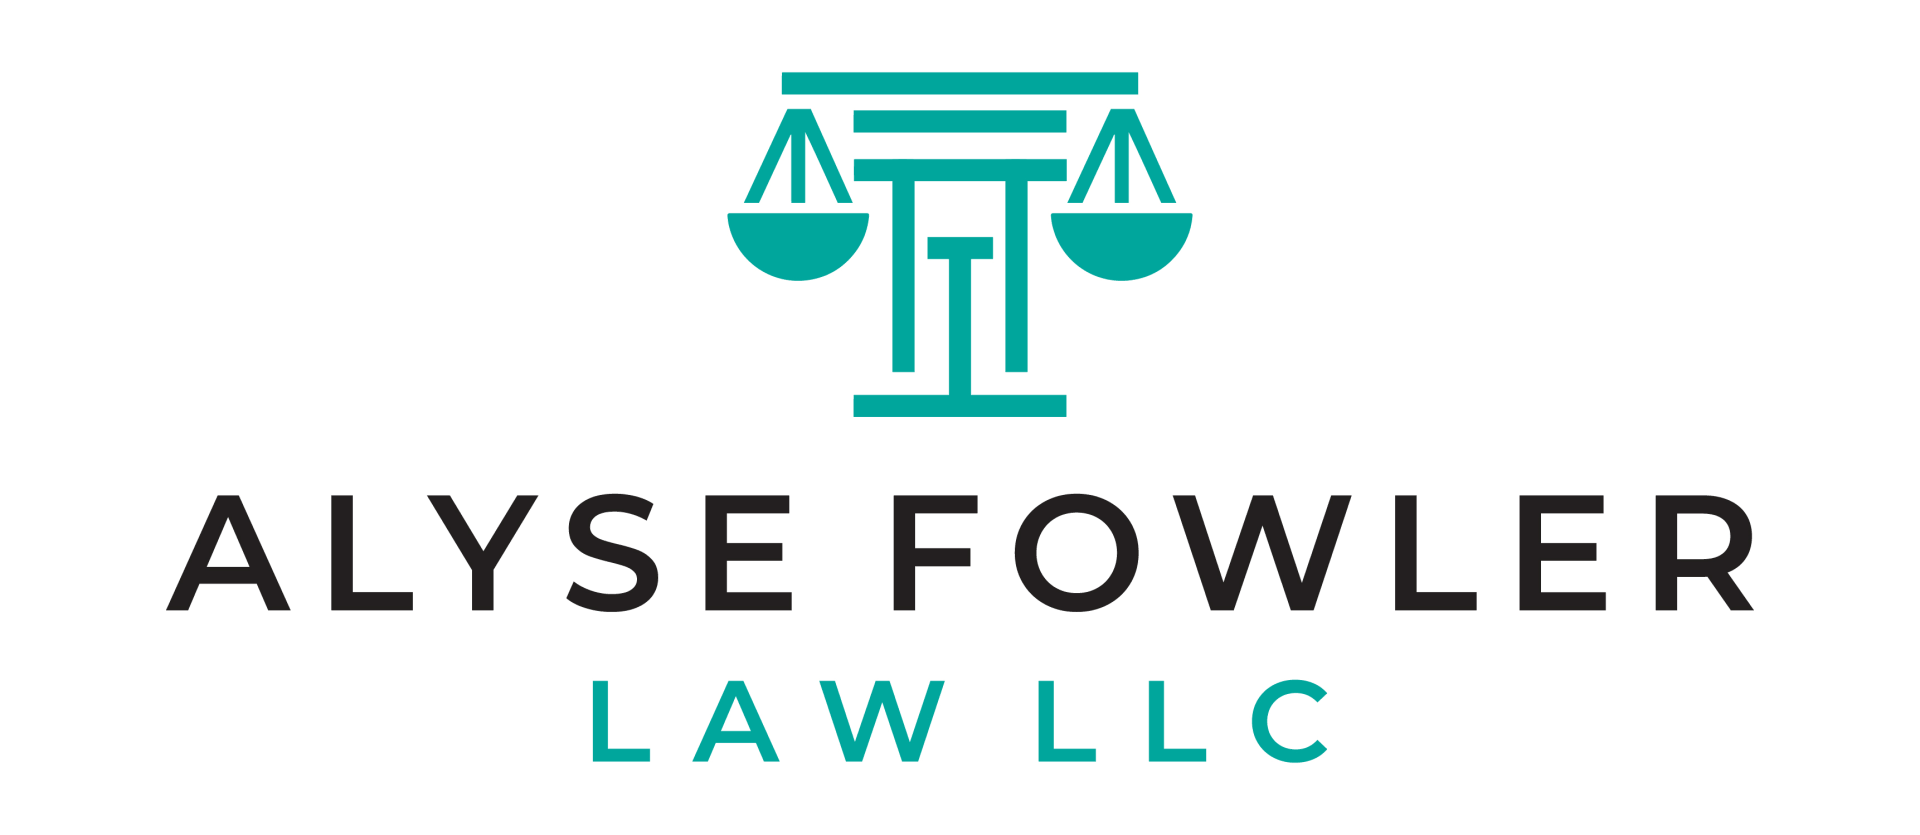 Alyse Fowler Law LLC Logo